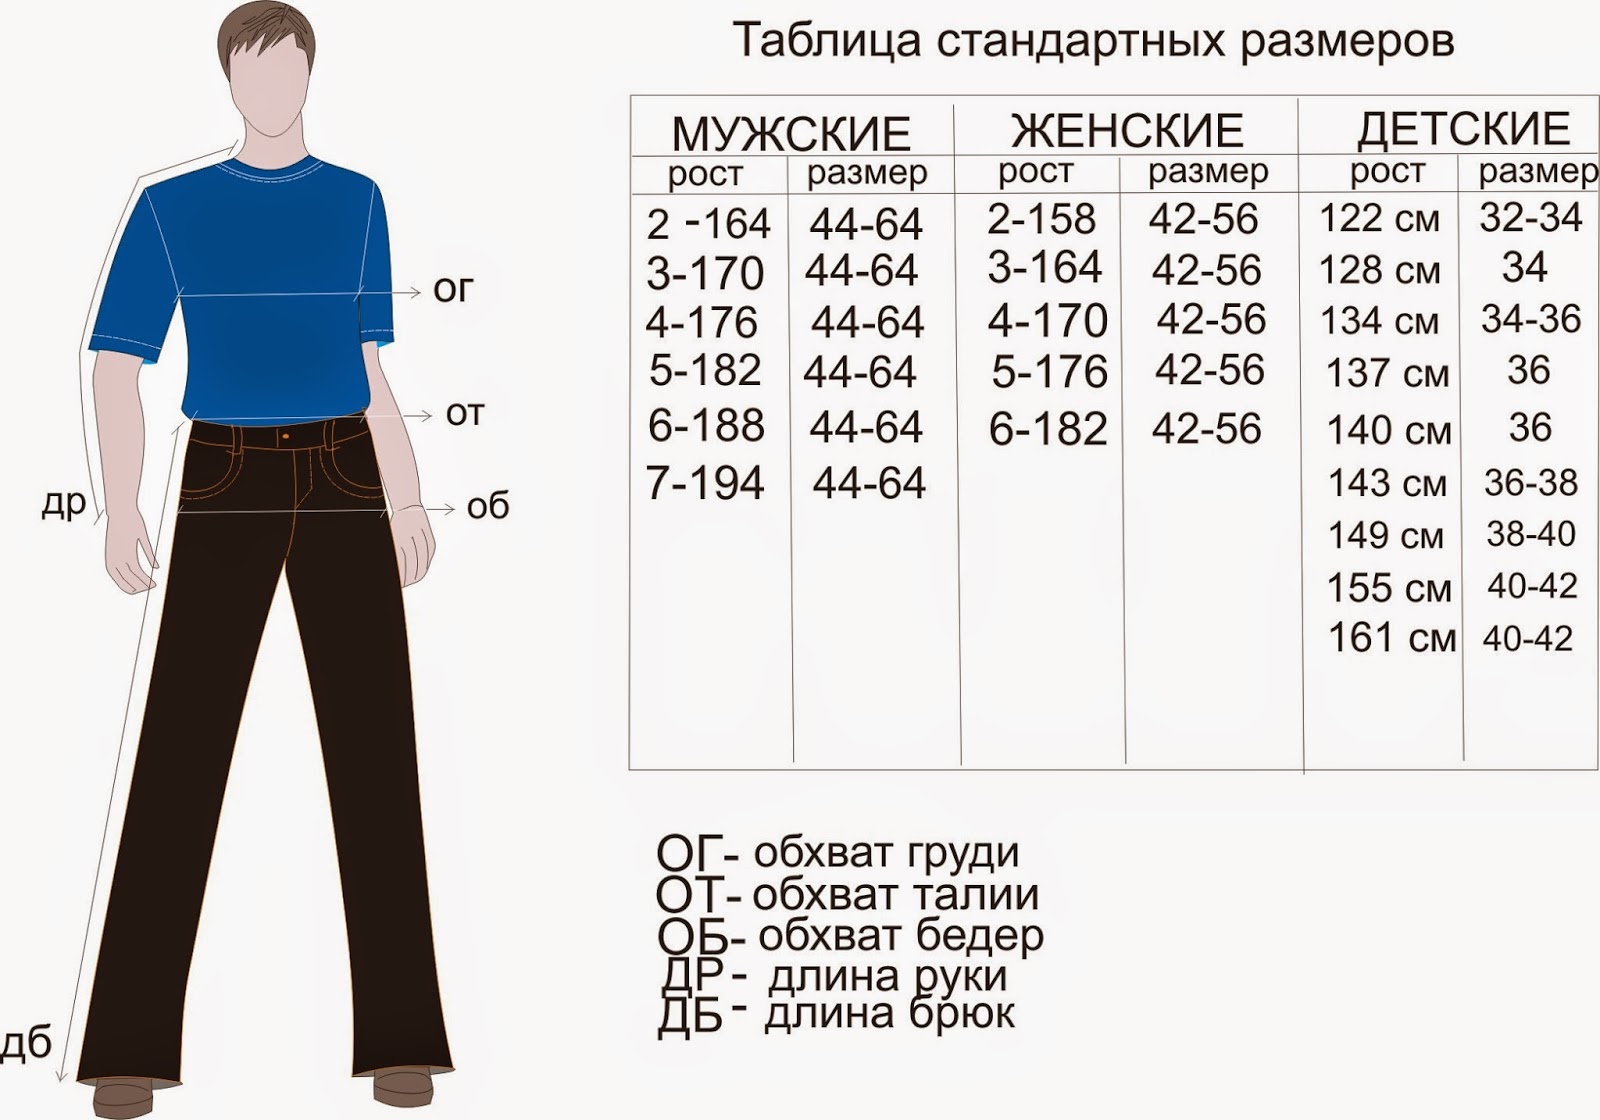 Размер мужской одежды штаны. Размеры штанов мужских таблица на рост 176. Размер штанов на рост 170 мужские. Размеры штанов мужских таблица рост 182. Мужские брюки таблица размеров и роста.